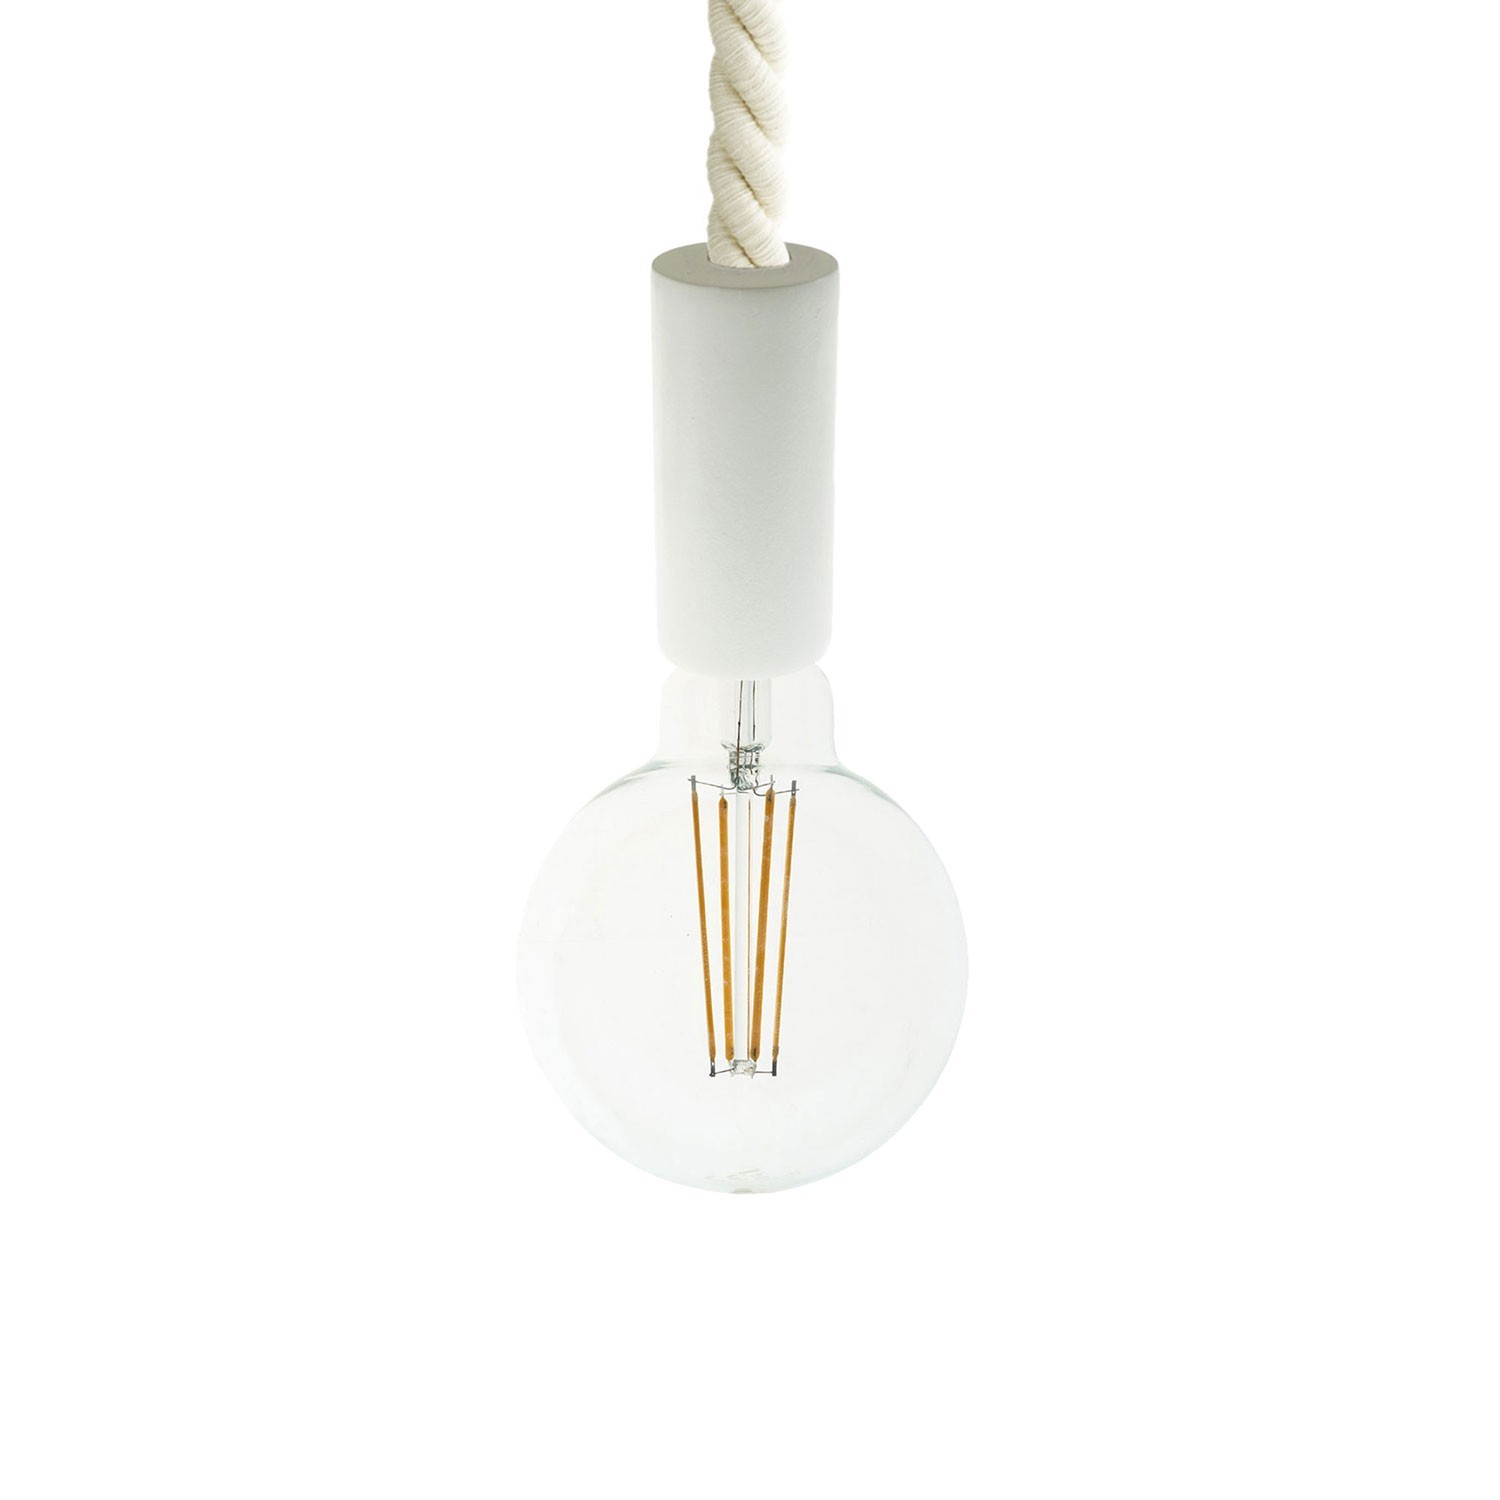 Lampada a sospensione con cordone nautico 2XL 24 mm con finiture in legno verniciato - Made in Italy